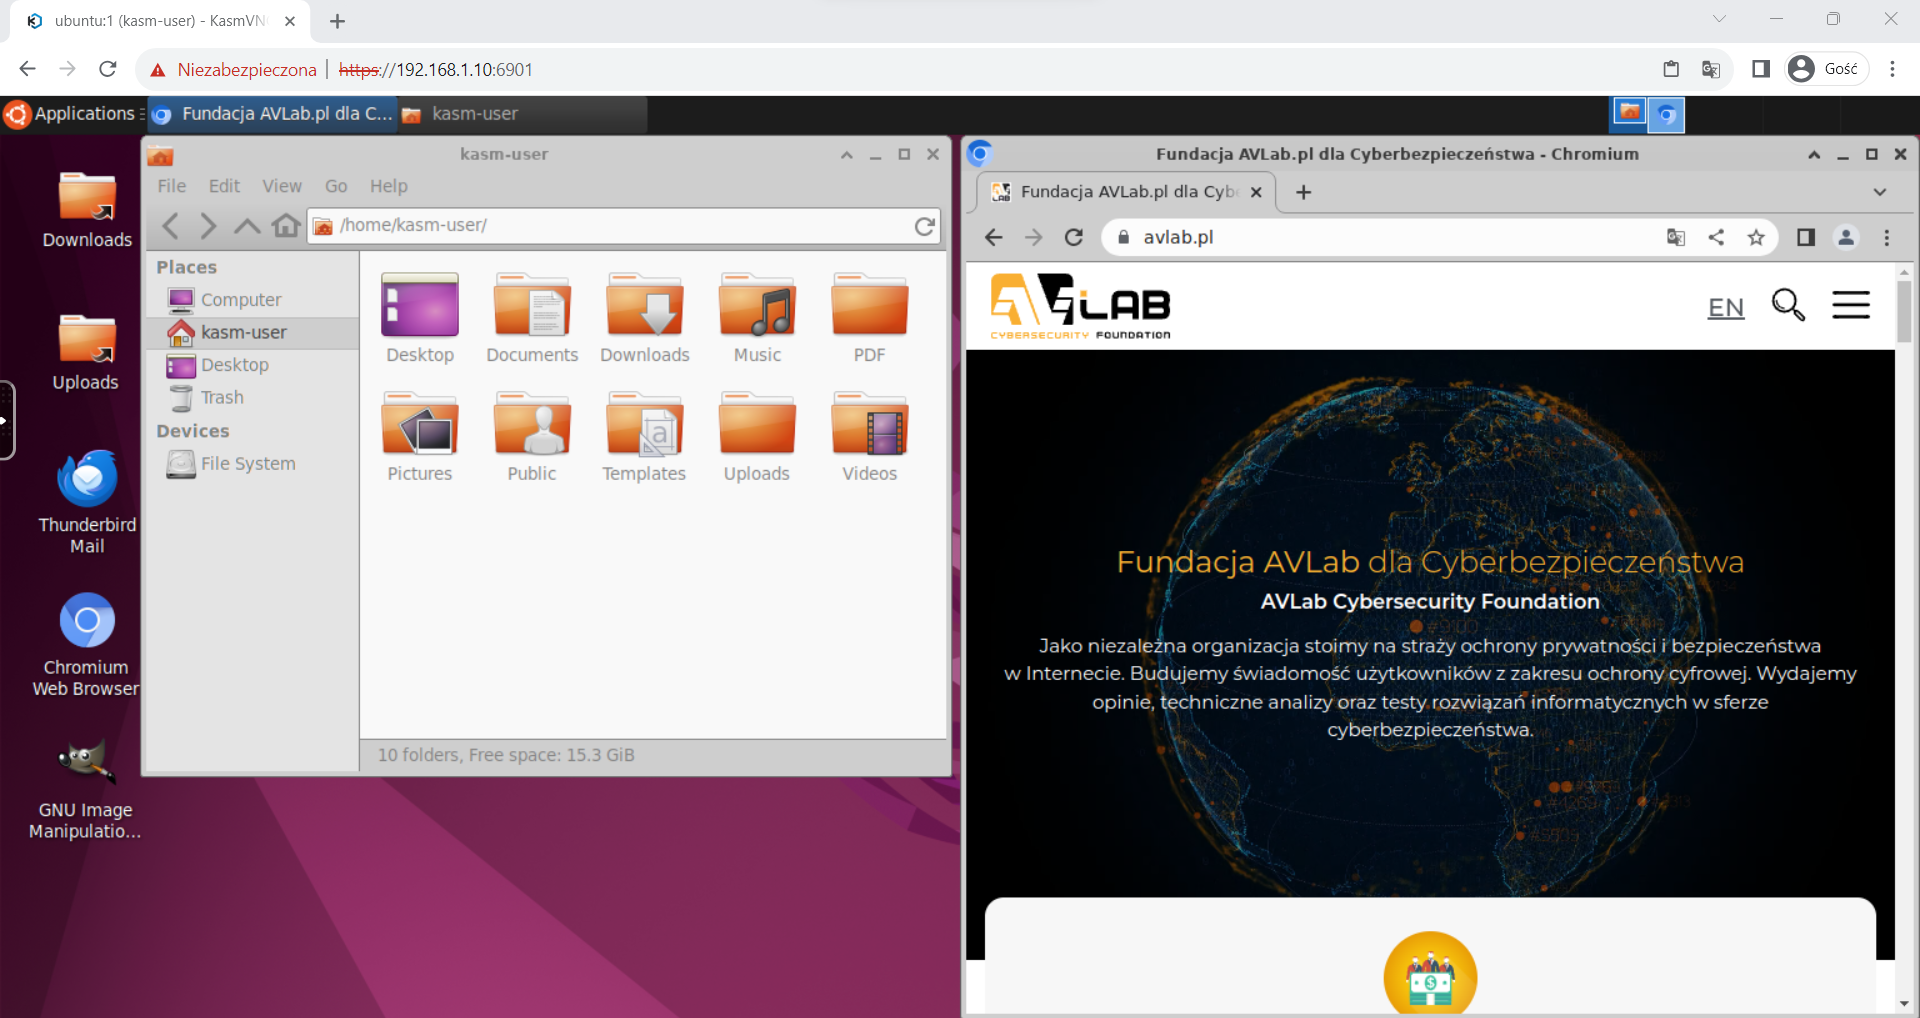 Kontener z Ubuntu dostępny poprzez przeglądarkę